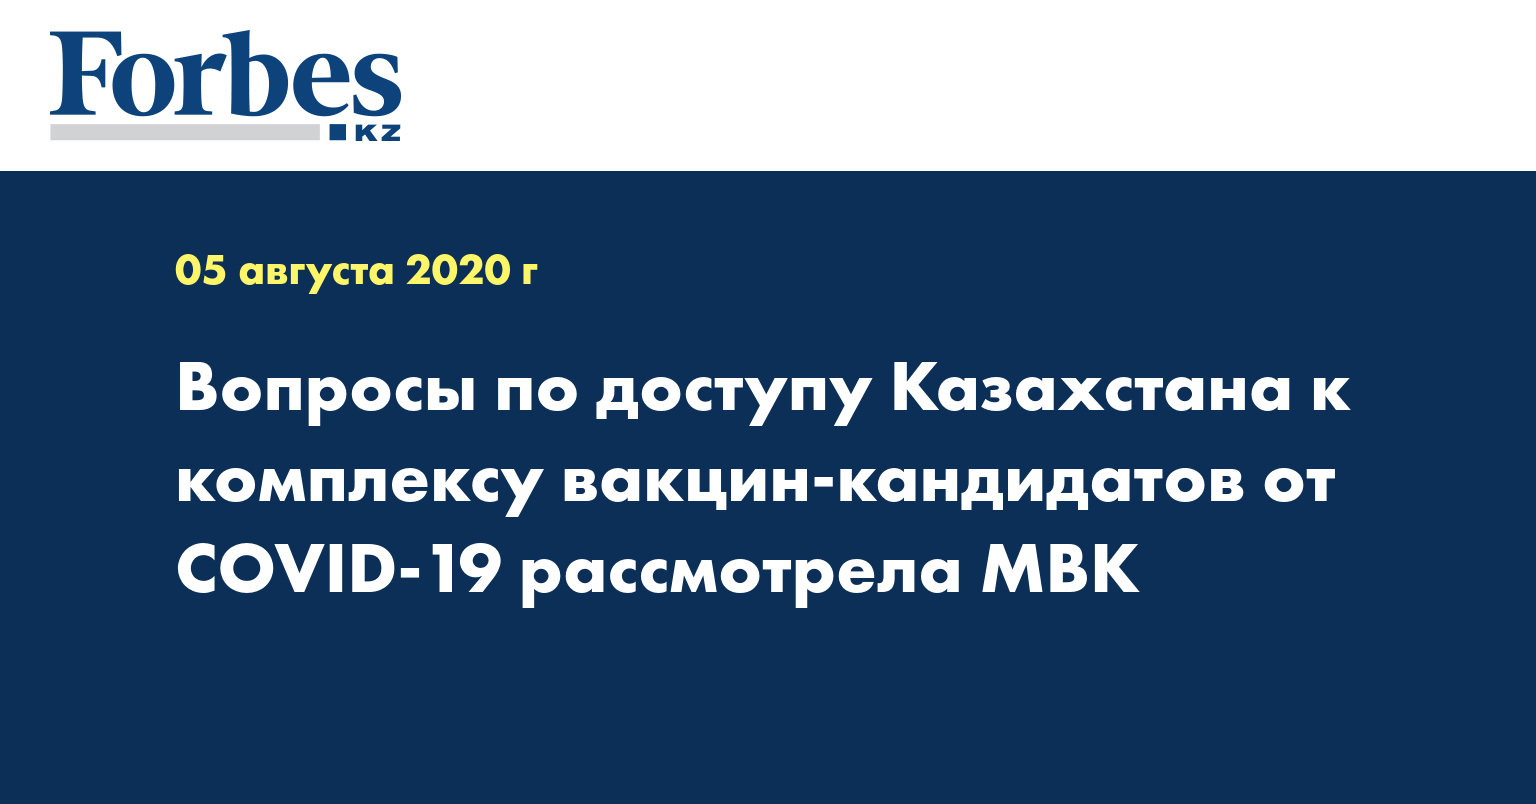 Вопросы по доступу Казахстана к комплексу вакцин-кандидатов от COVID-19 рассмотрела МВК